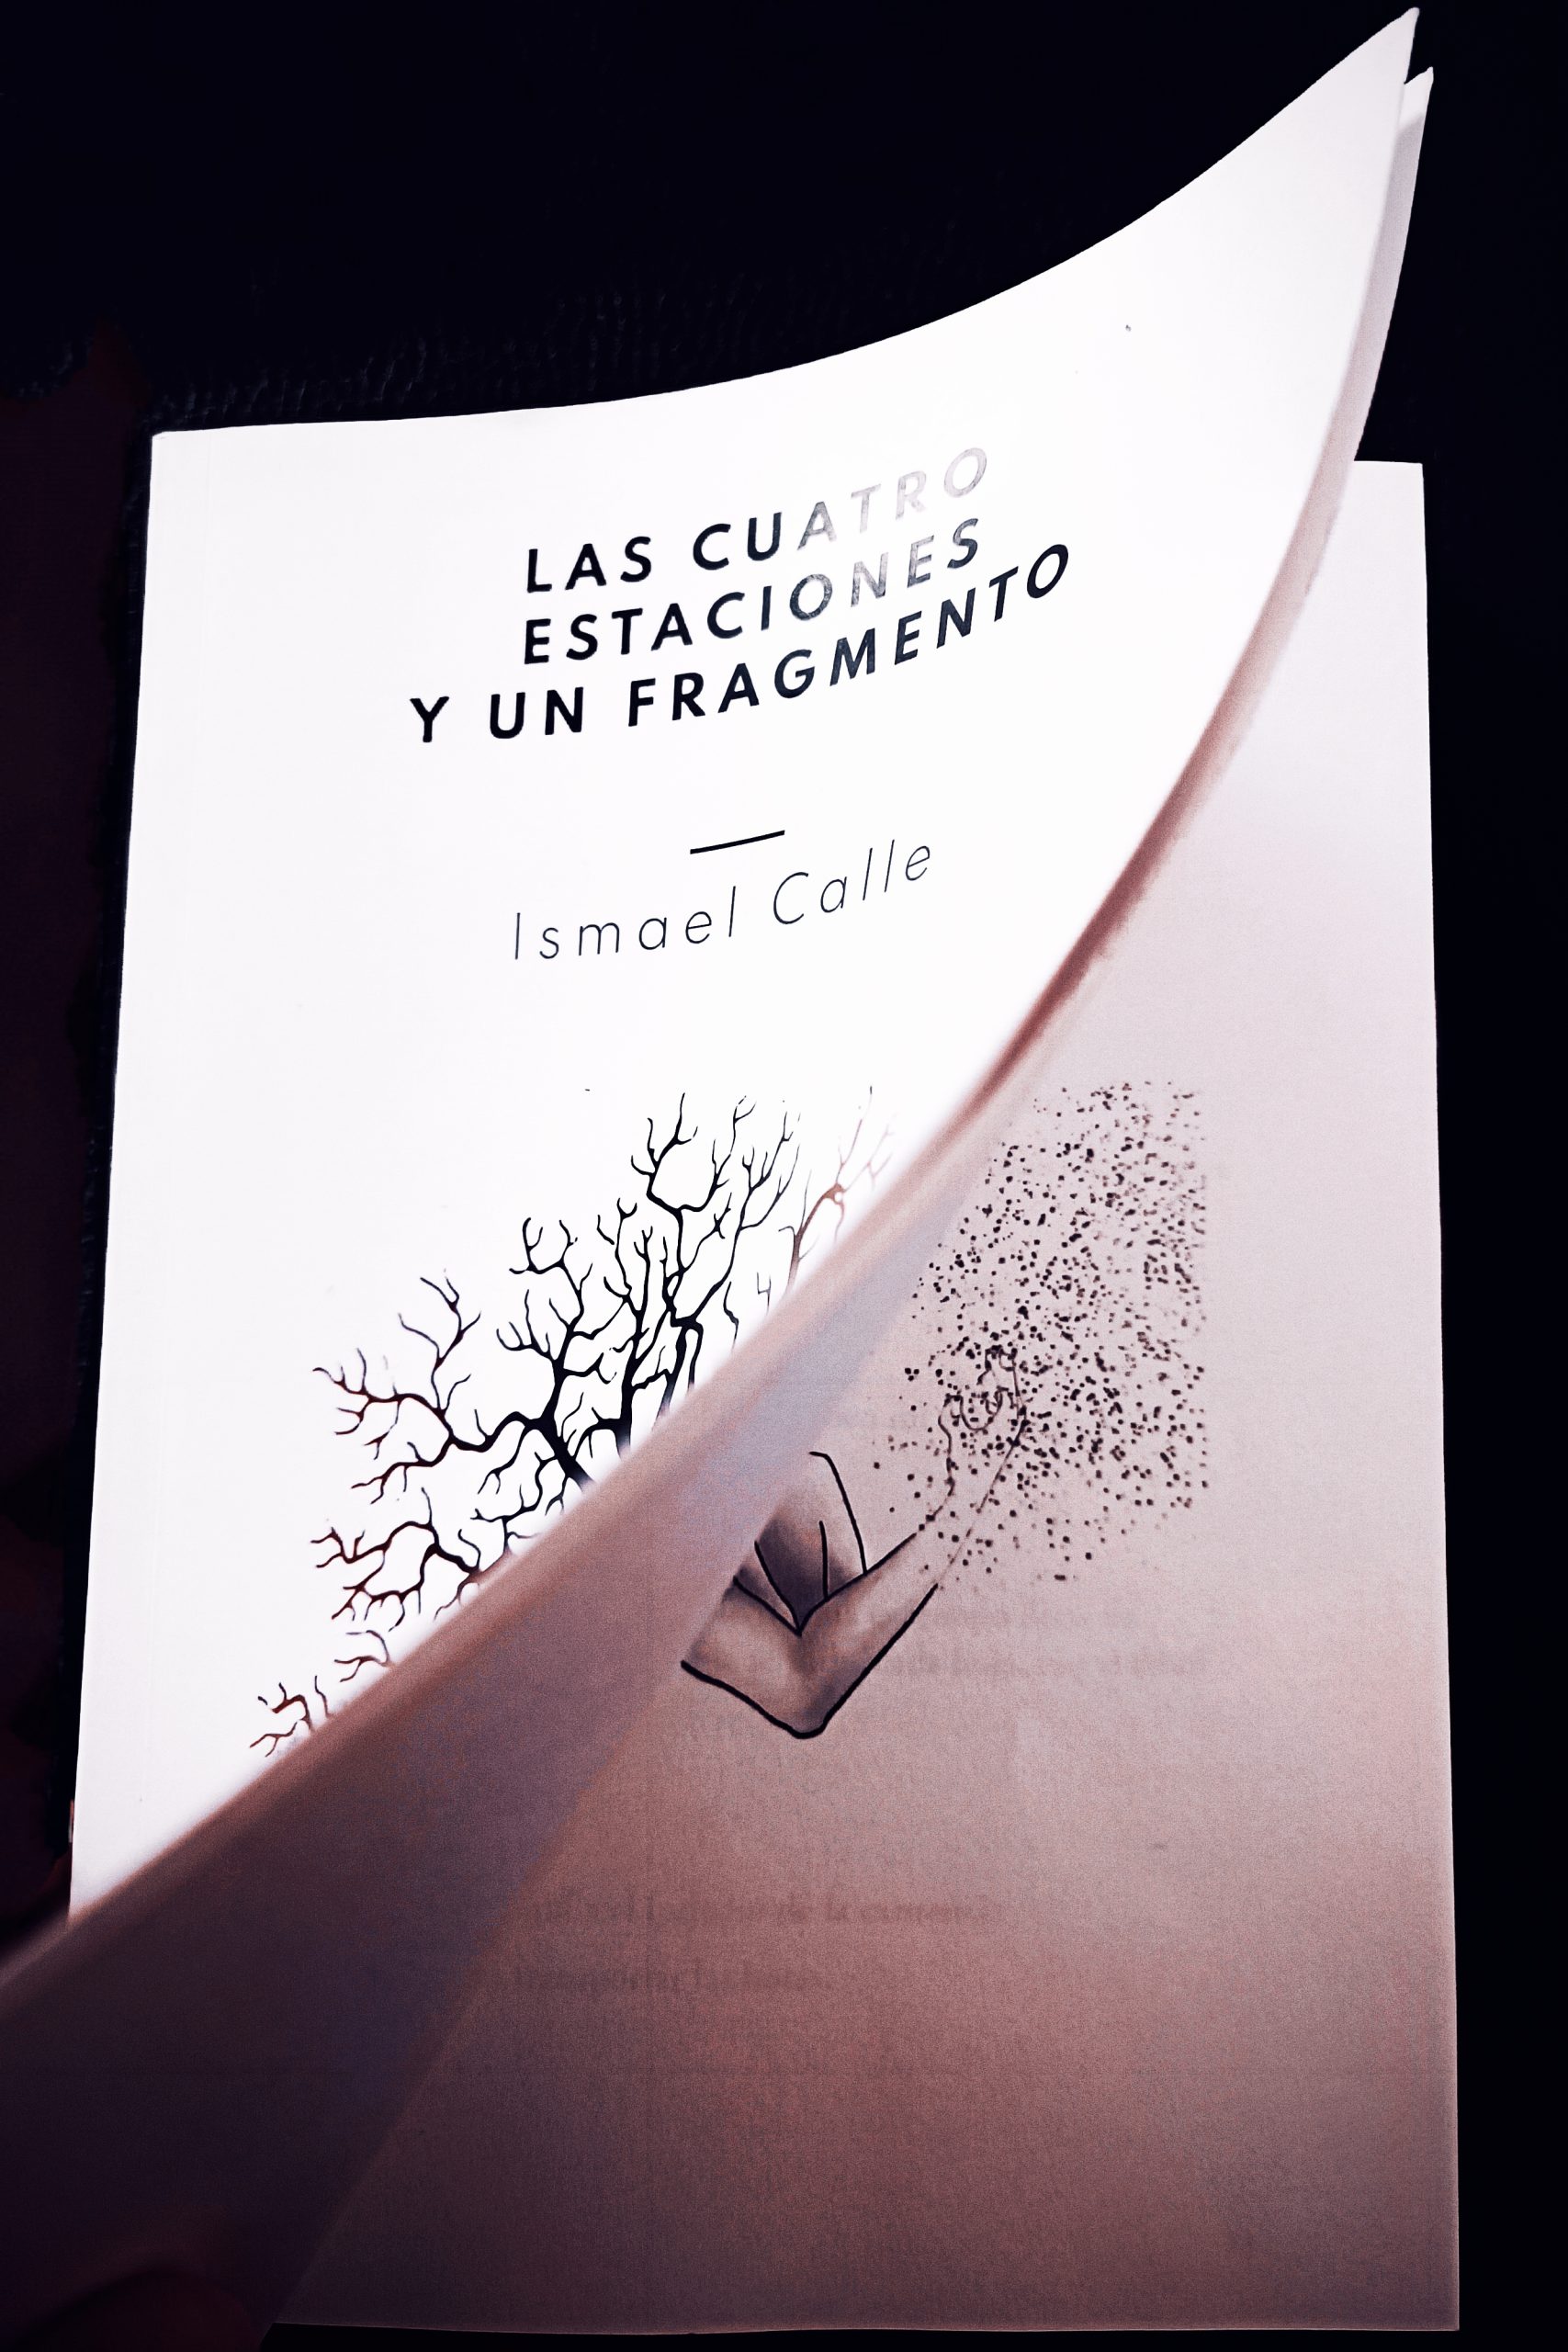 Entrevistamos a Ismael Calle, que nos cuenta todo sobre “Las cuatro estaciones y un fragmento”, obra que ha publicado con Círculo Rojo.